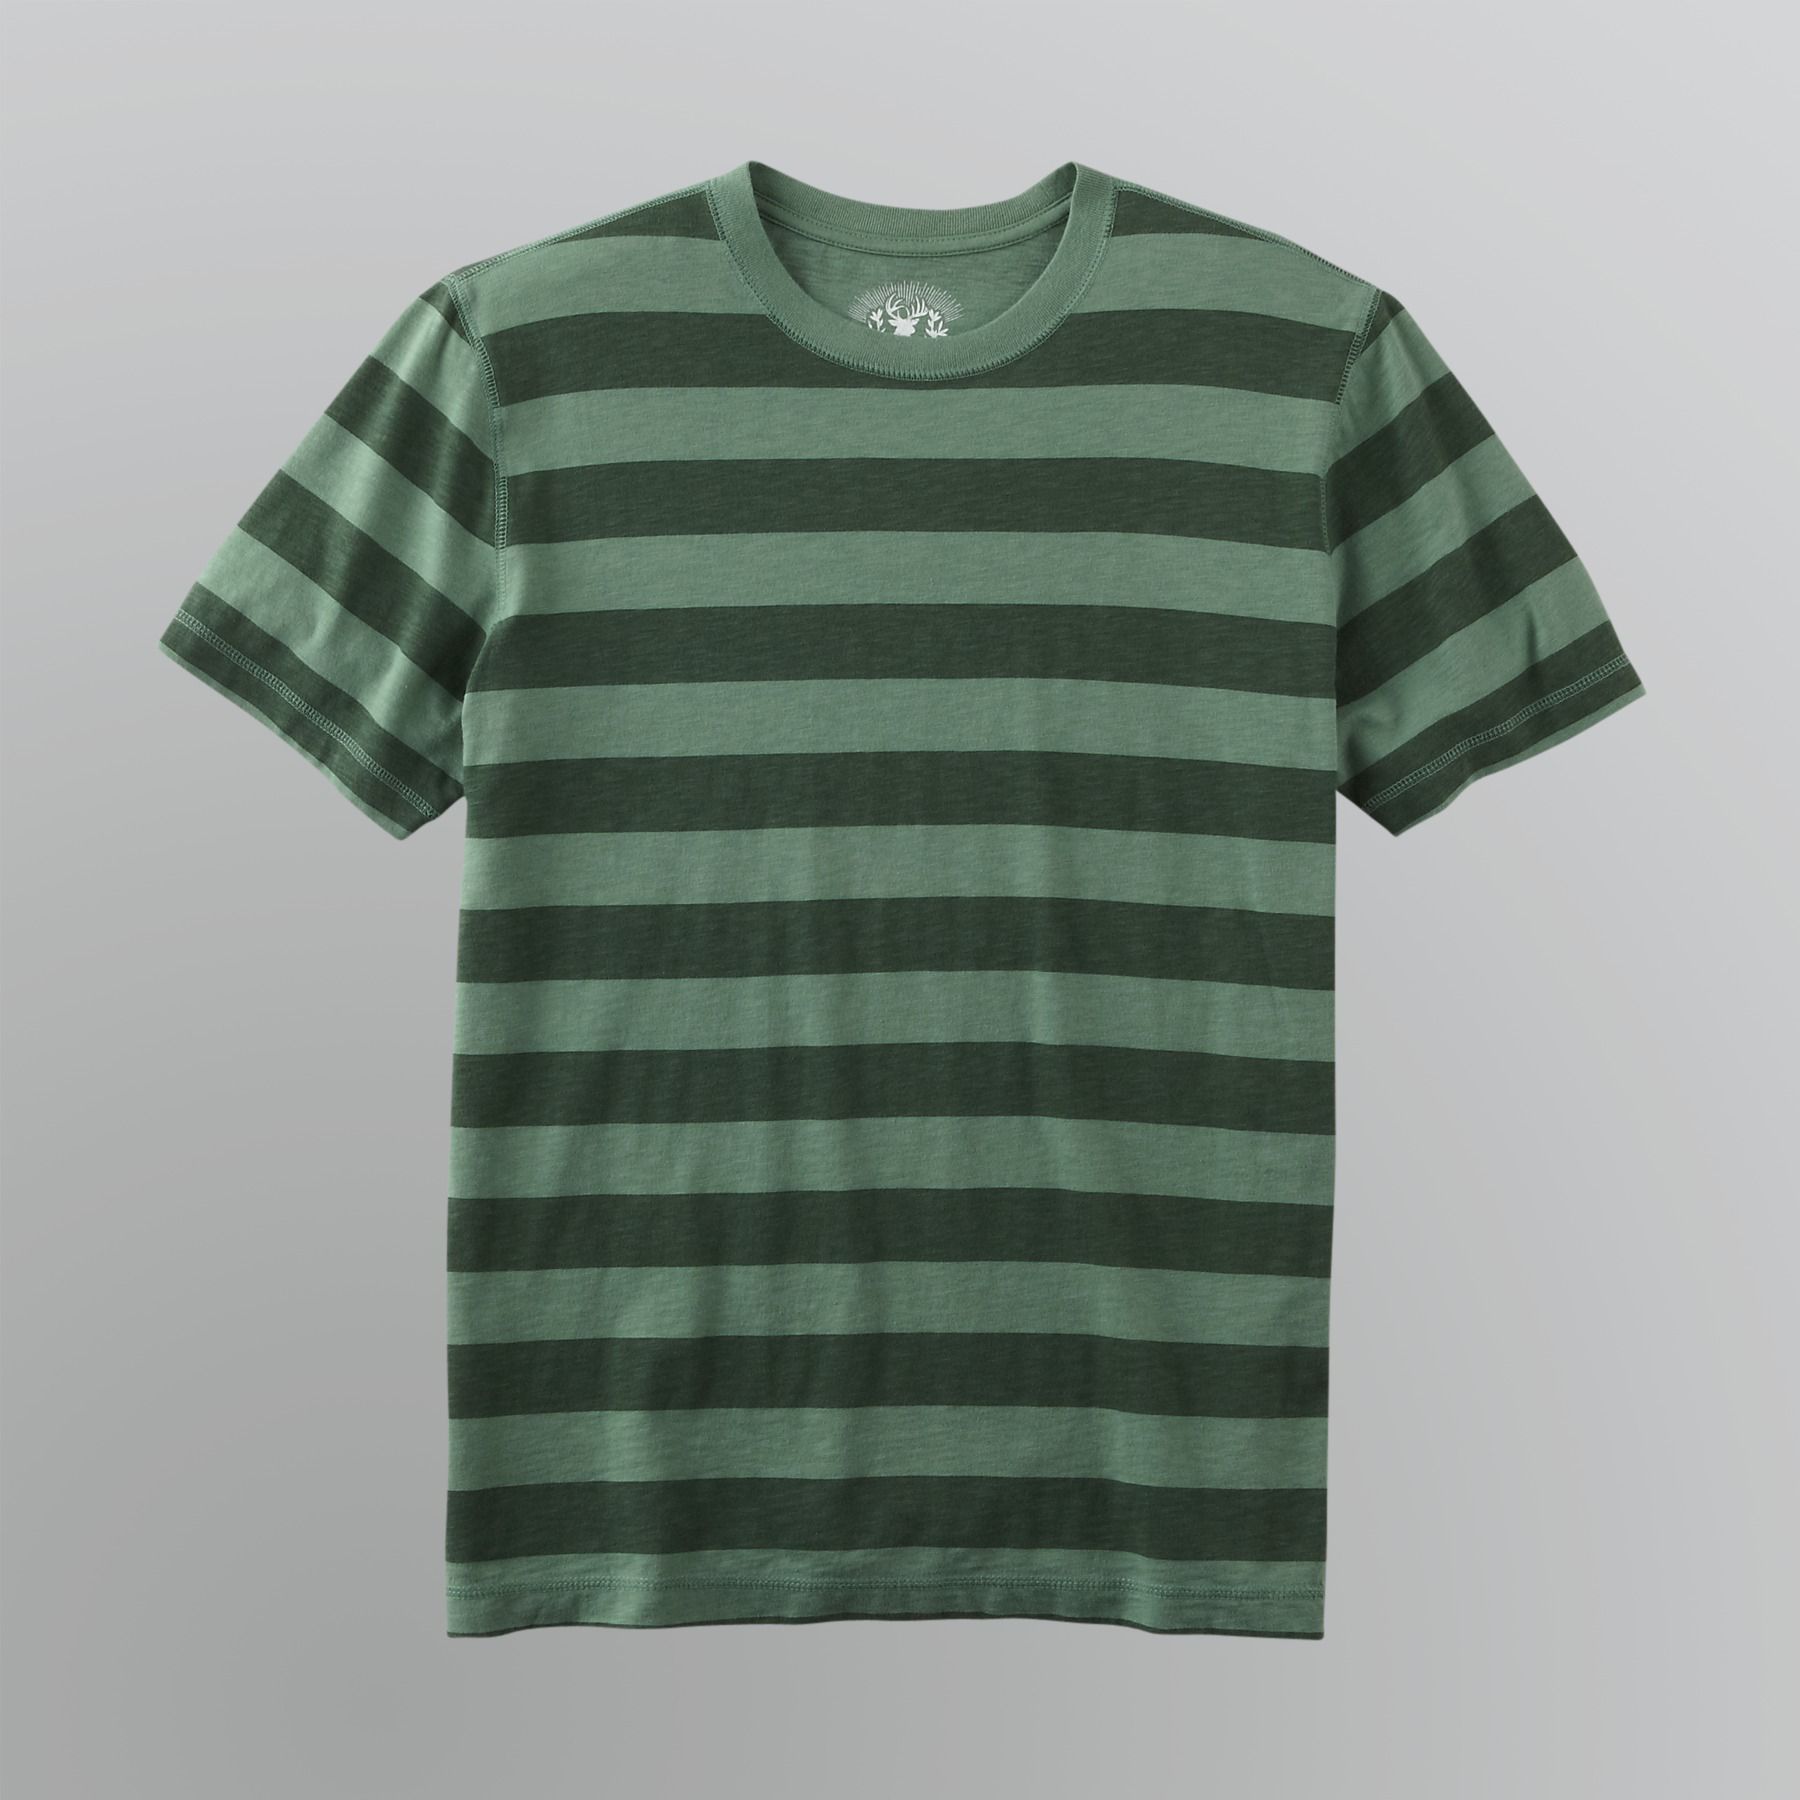 Roebuck & Co. Young Men's Striped T-Shirt